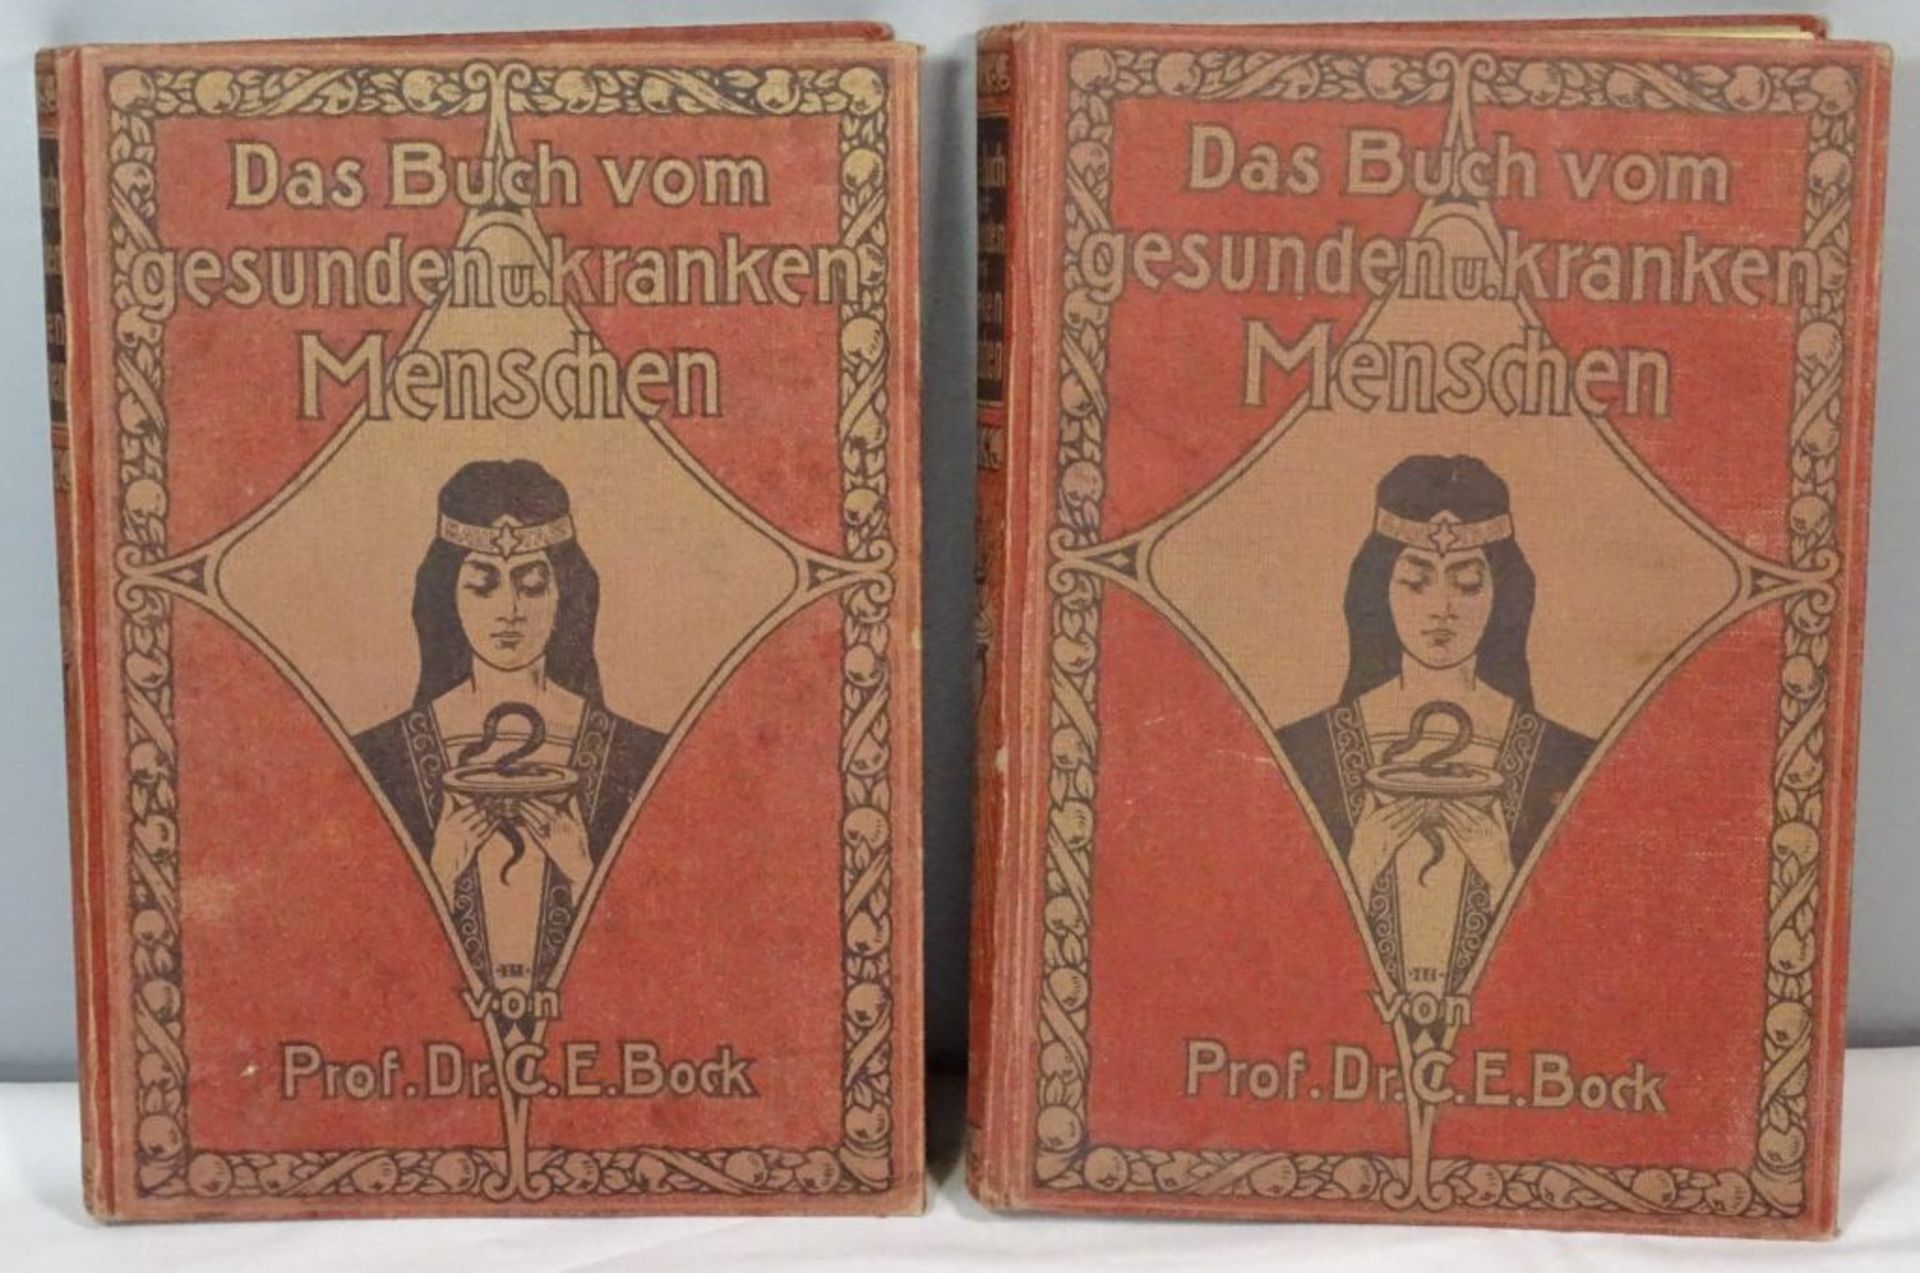 Prof.Dr.C.E.Bock, Das Buch vom gesunden u. kranken Menschen, 1. u. 2. Band, 1921.